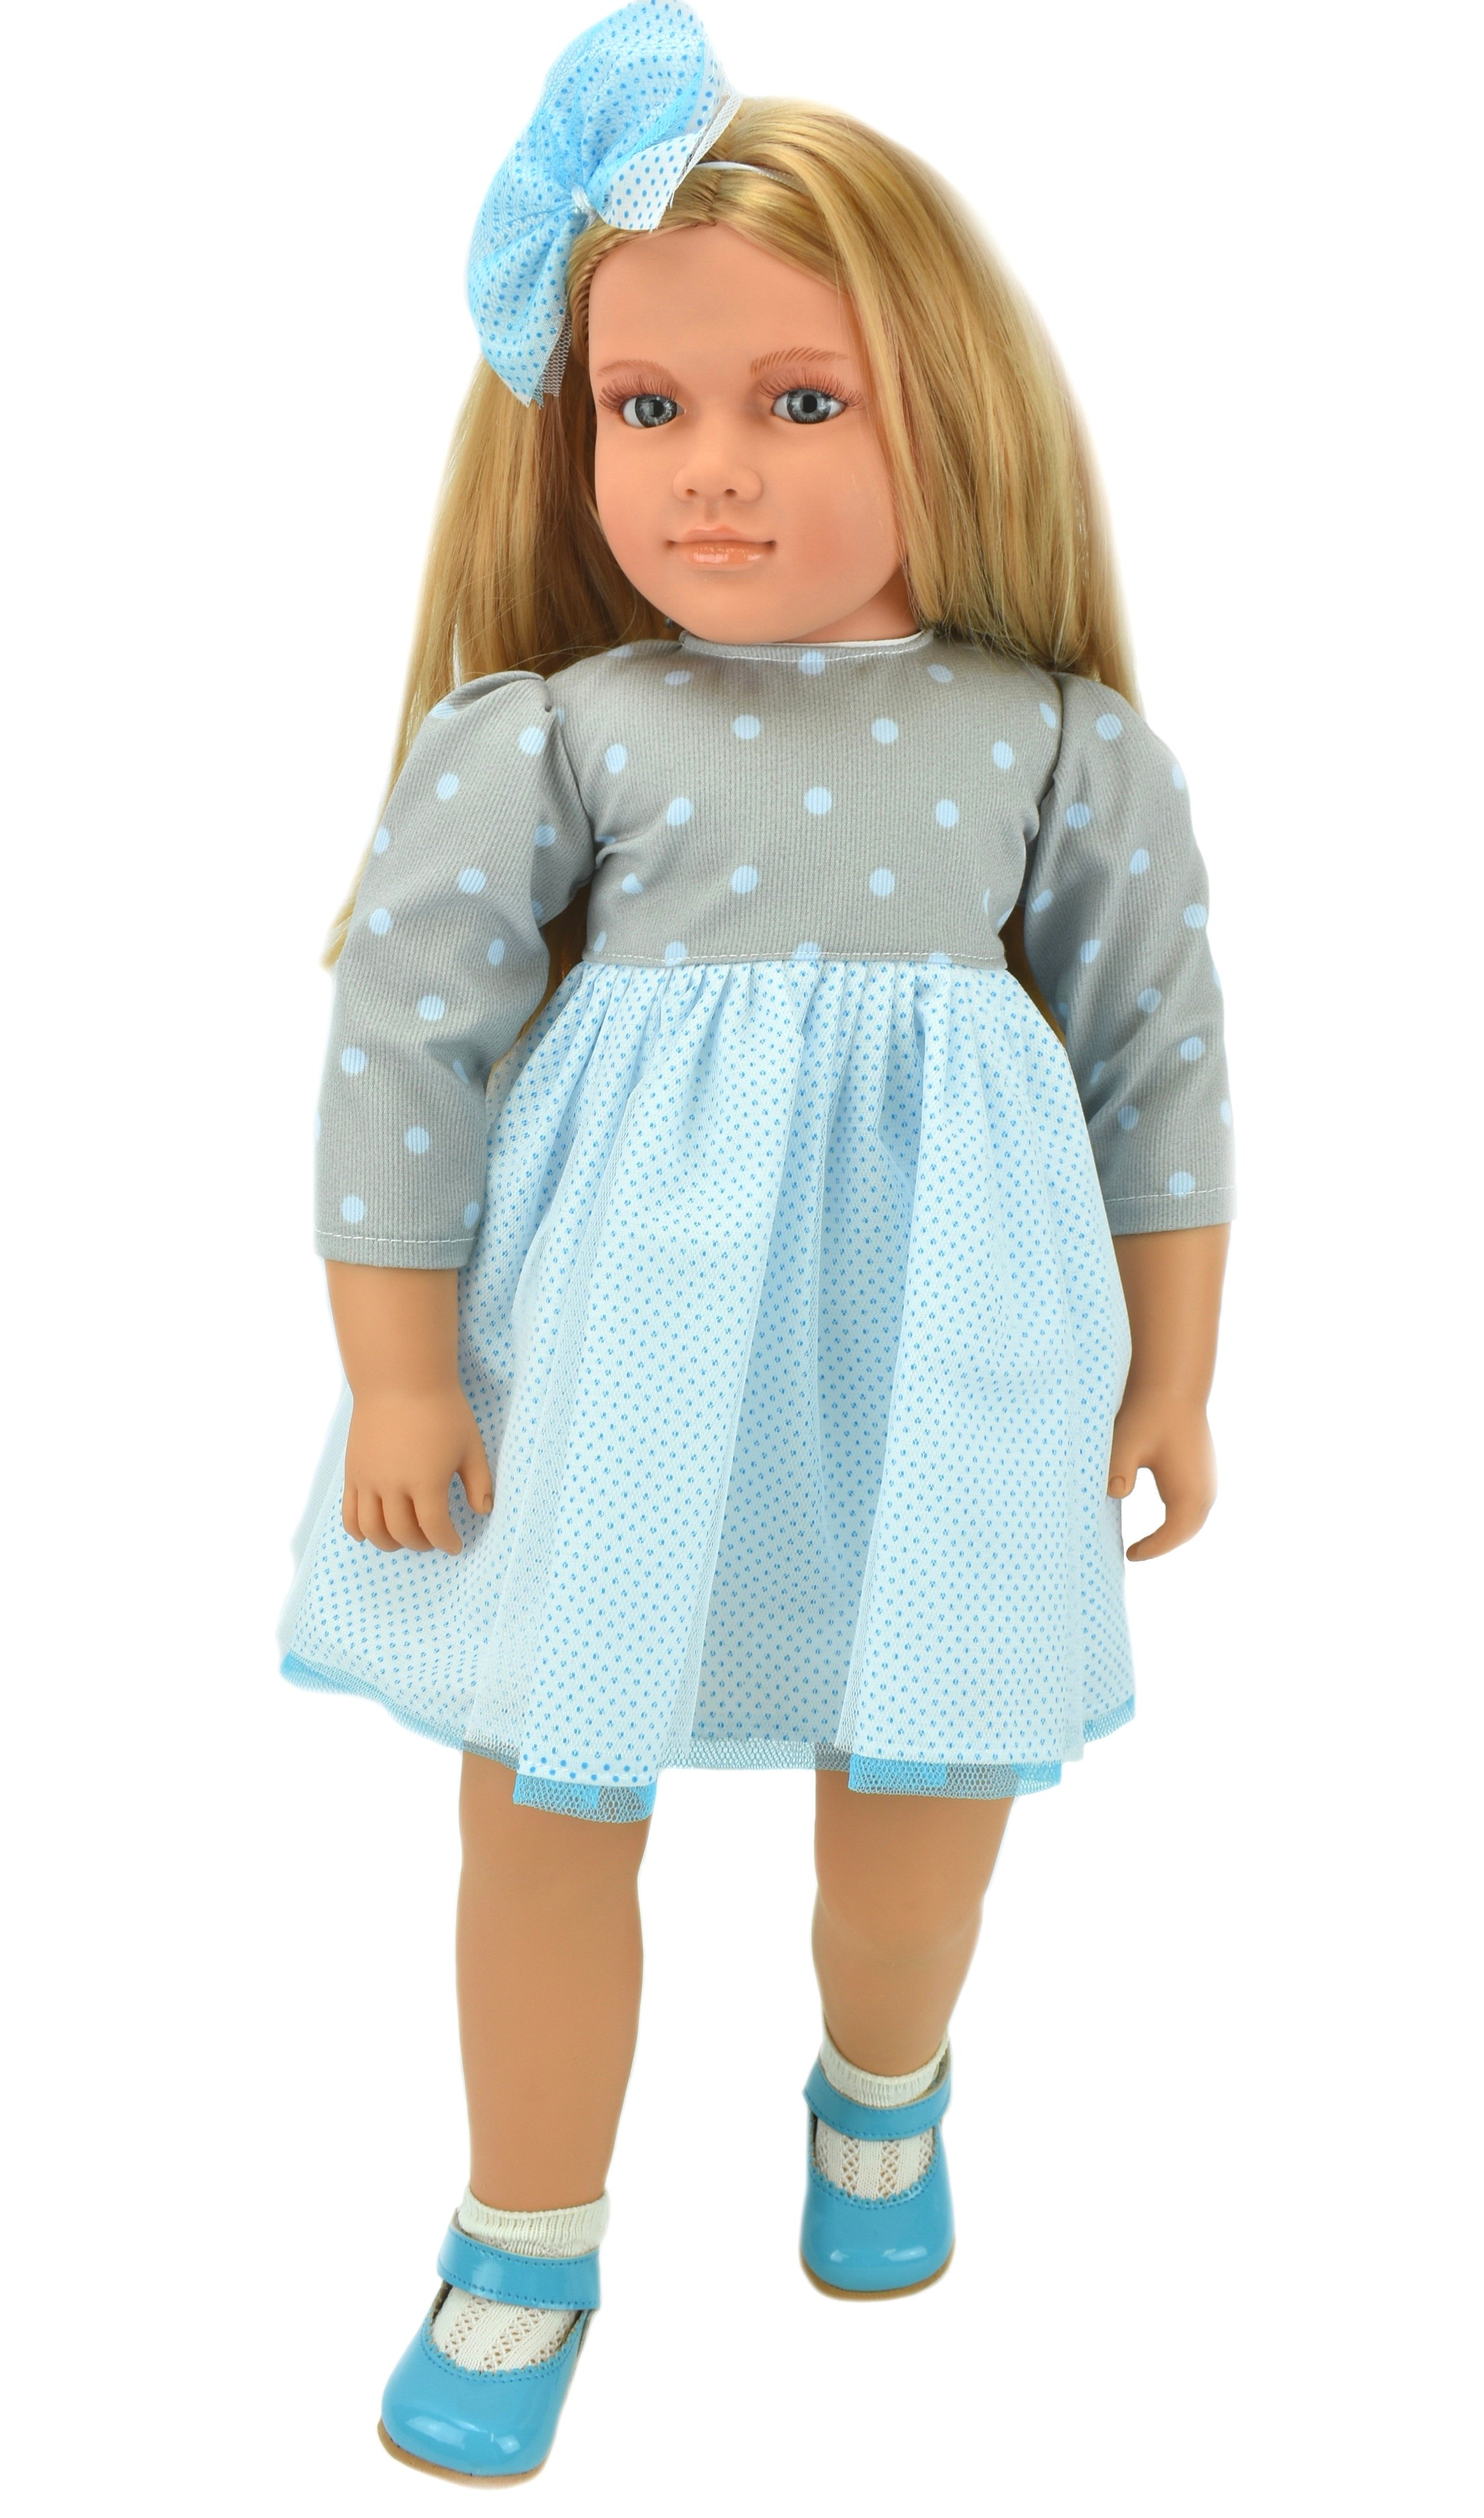 Коллекционная кукла Lamagik Ширли блондинка, в серо-белом платье в горох, 62 см, B9004 lamagik s l коллекционная кукла ширли блондинка 62 см